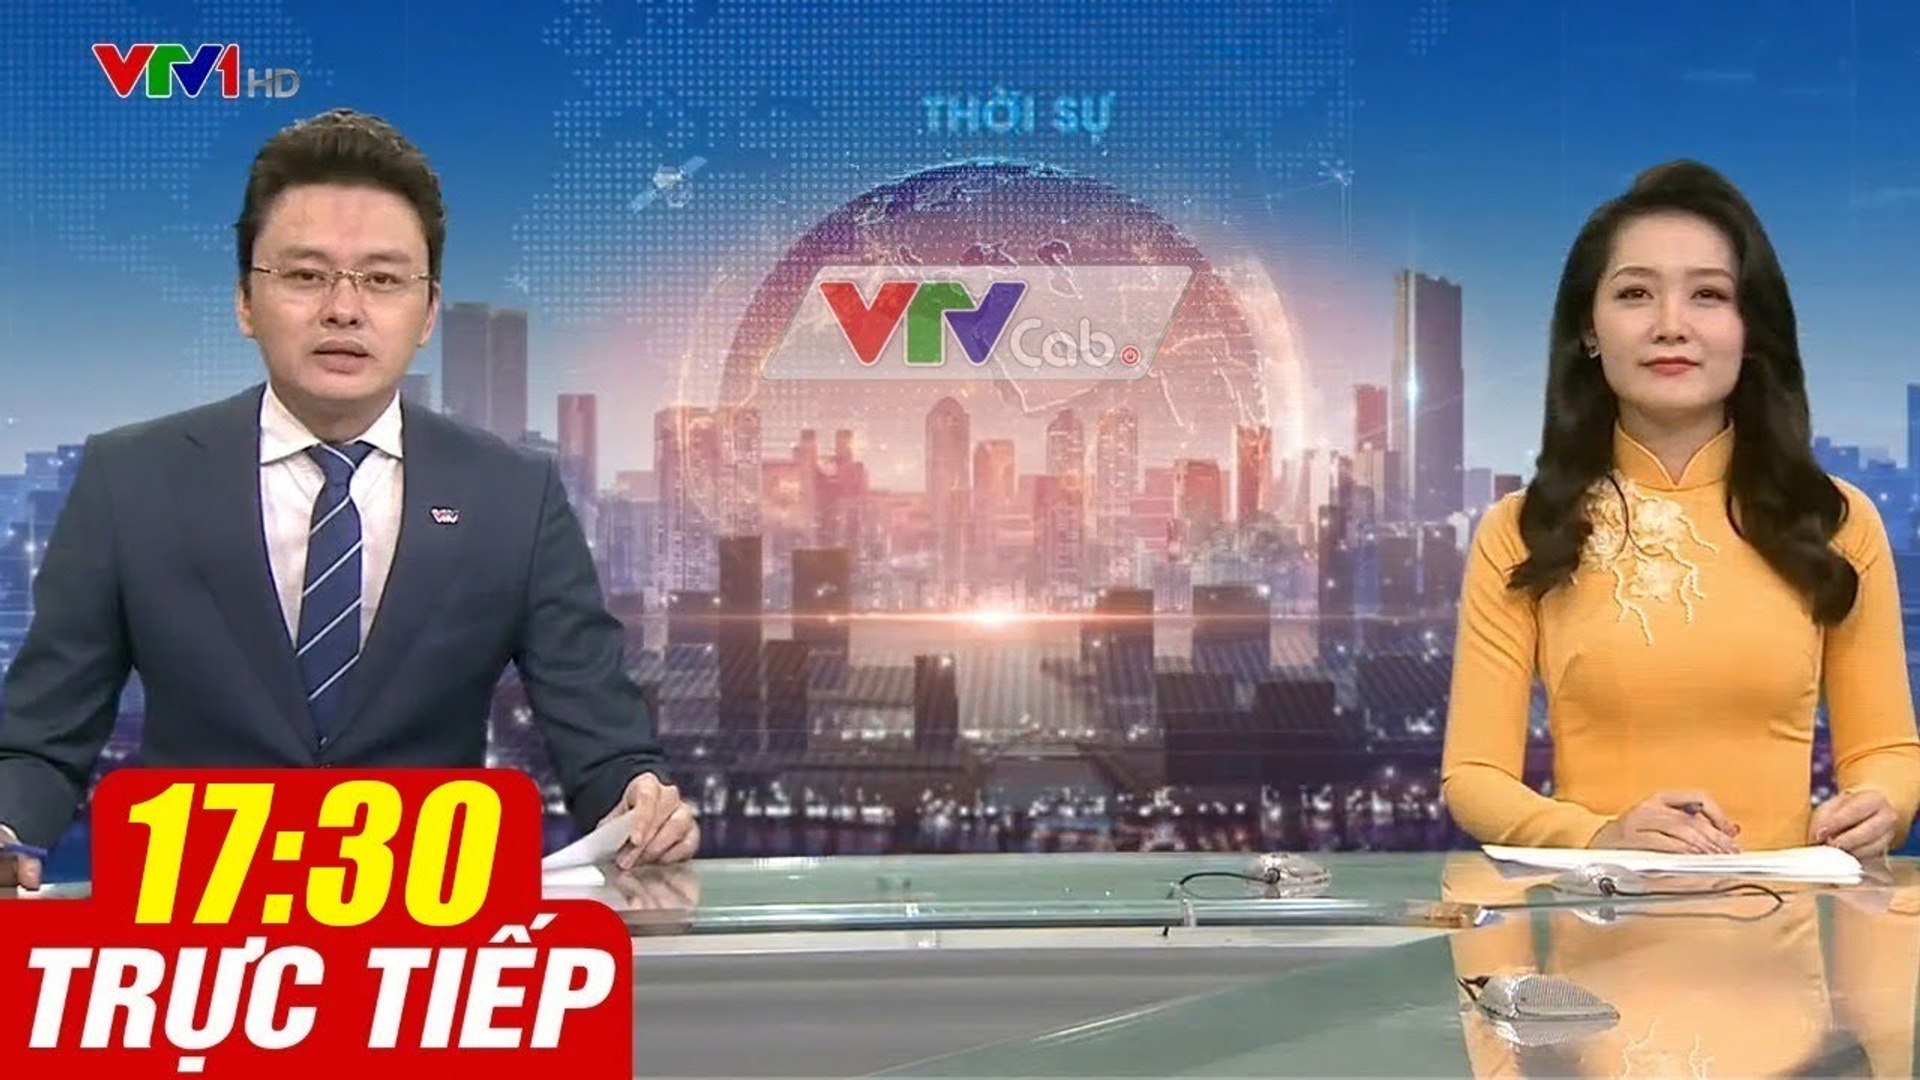 Trực Tiếp VIỆT NAM HÔM NAY 17h30 ngày 29.09.2020  Tin tức thời sự VTV1 mới nhất hôm nay